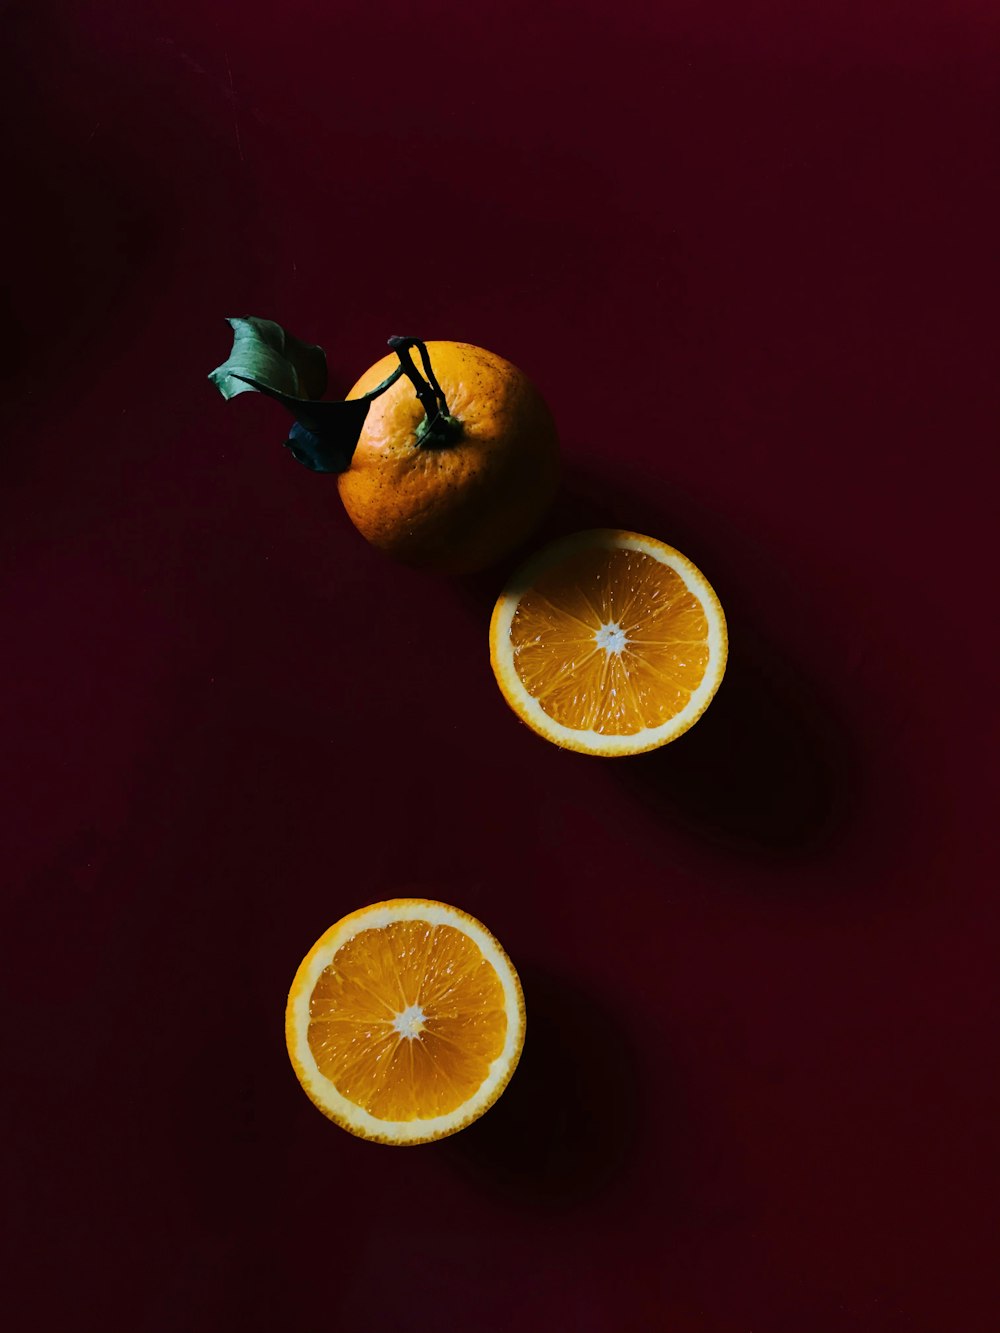 빨간색 표면에 얇게 썬 오렌지 과일